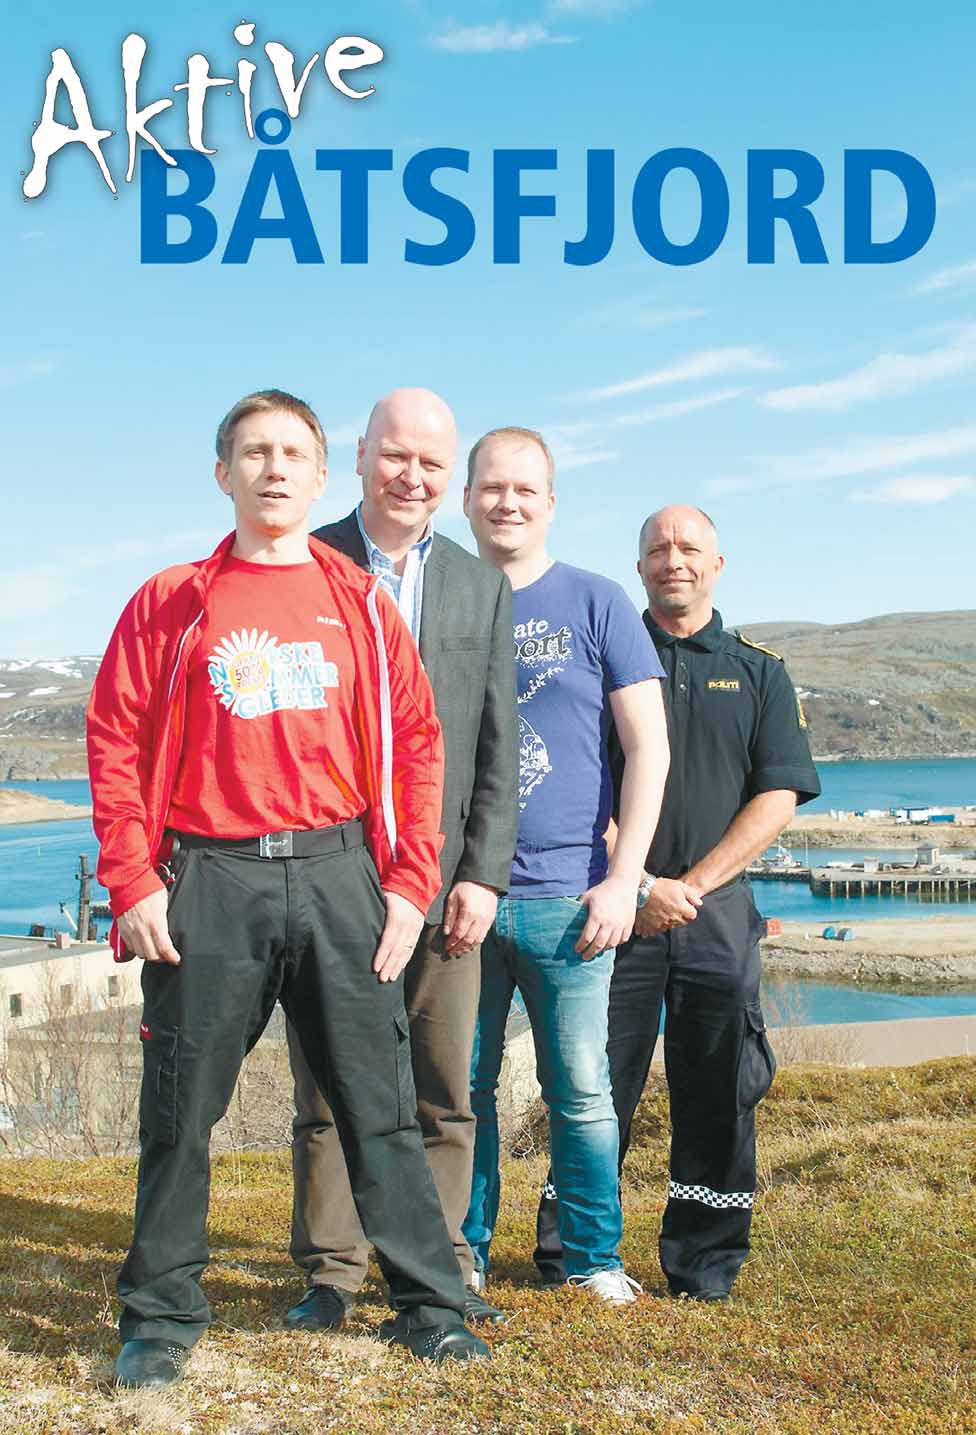 Fire fine fyrer Båtsfjord har virket som en magnet på mang en sjel det siste året.